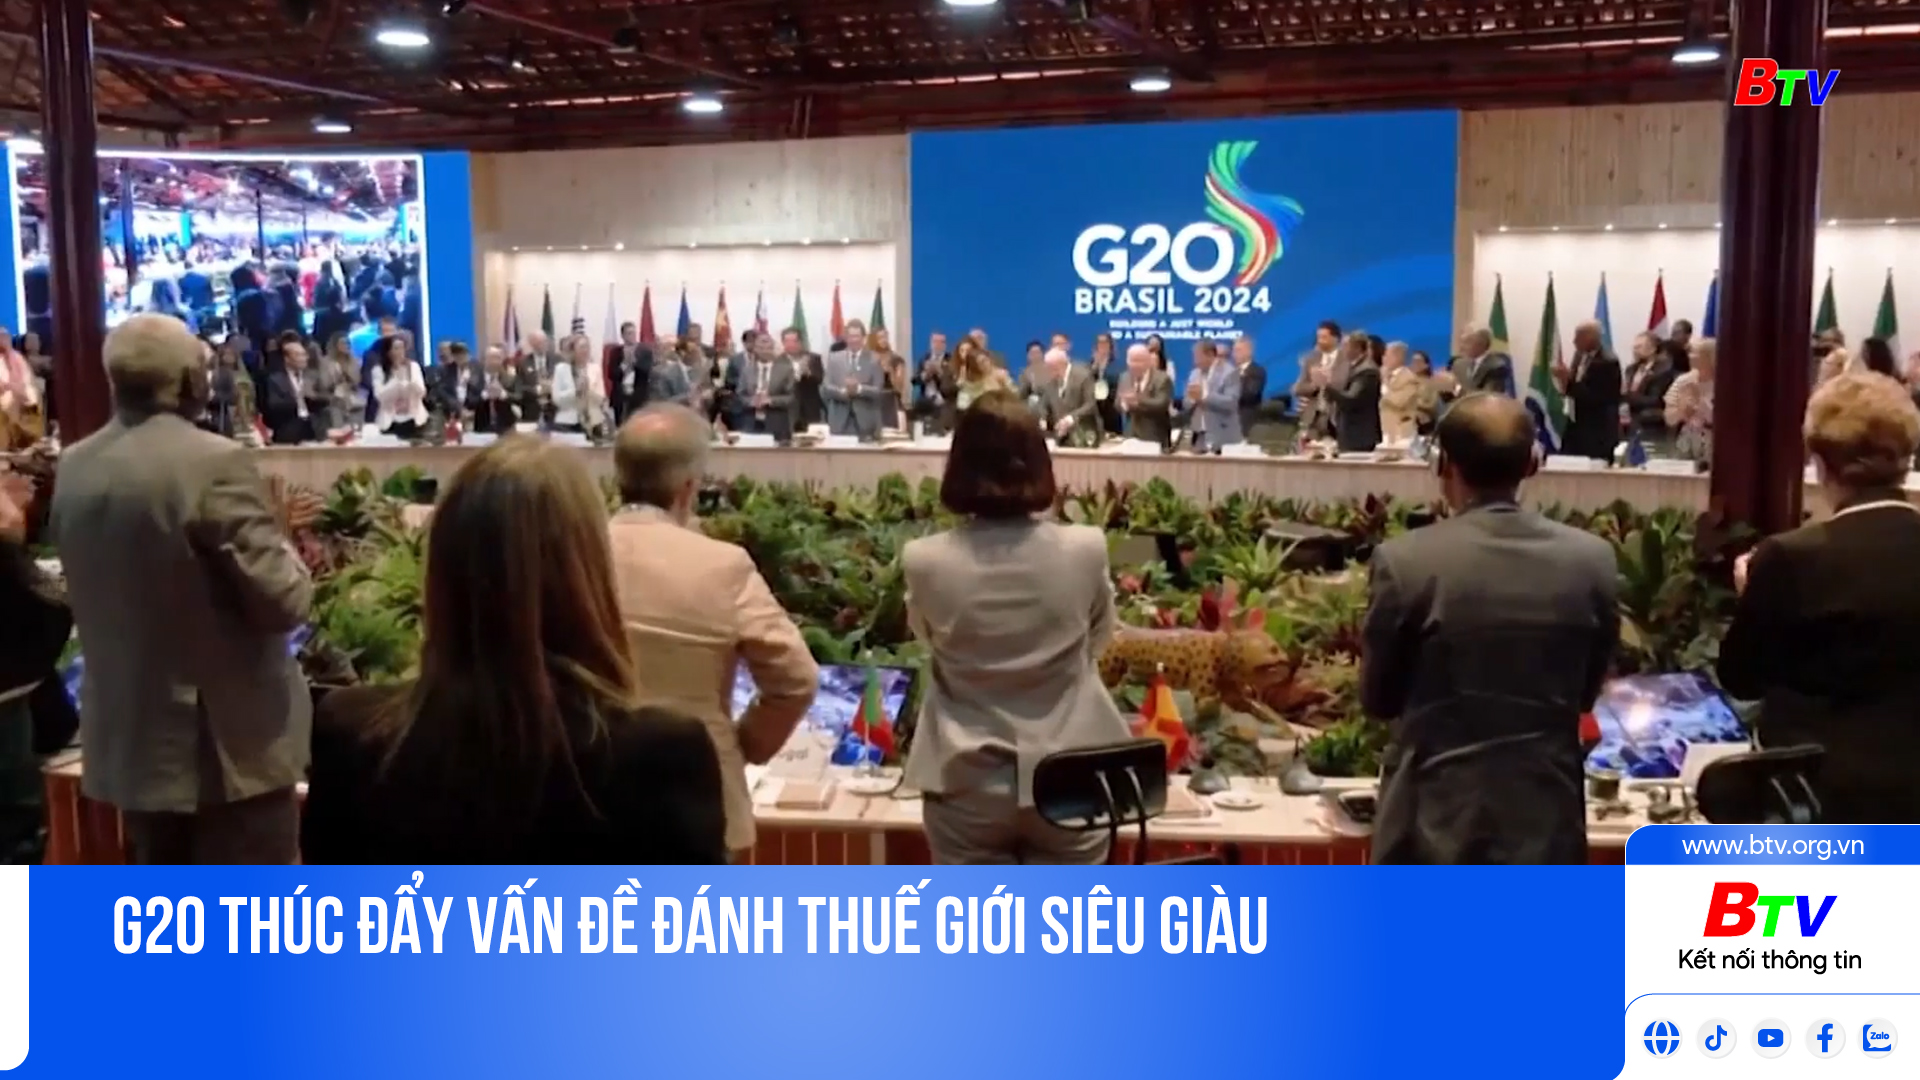 G20 thúc đẩy vấn đề đánh thuế giới siêu giàu